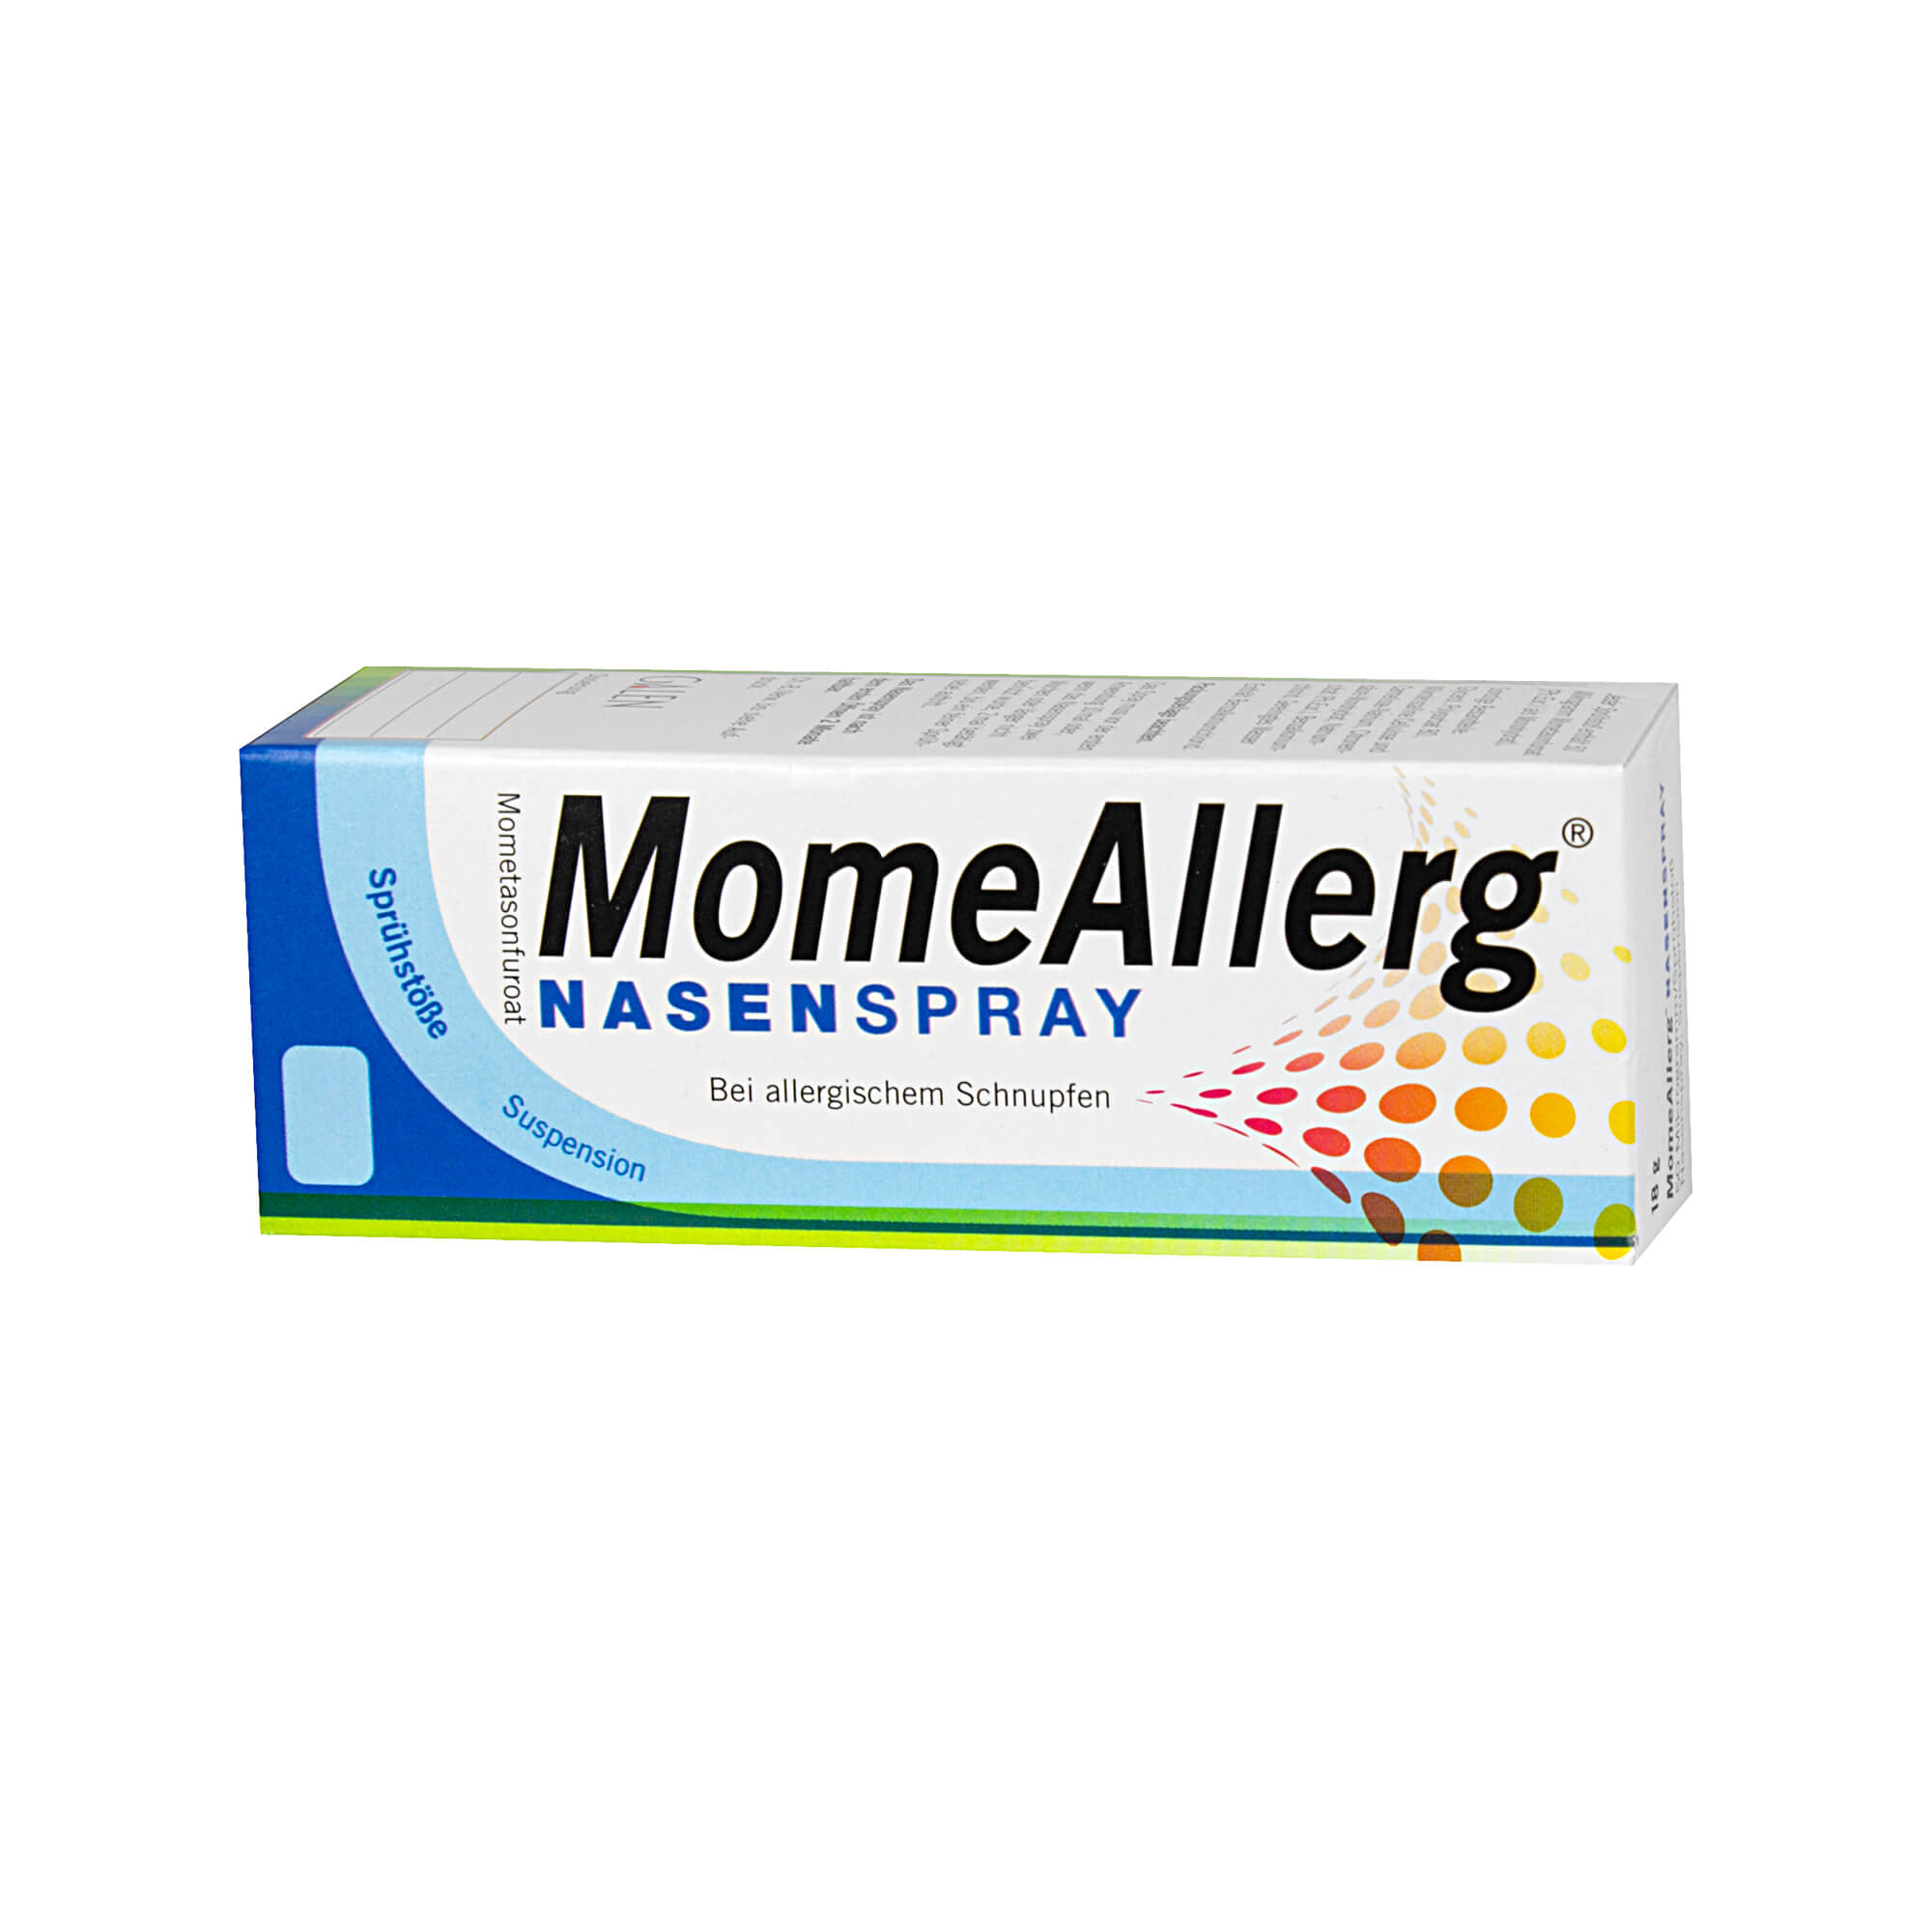 Zur symptomatischen Behandlung von saisonalem allergischen Schnupfen.